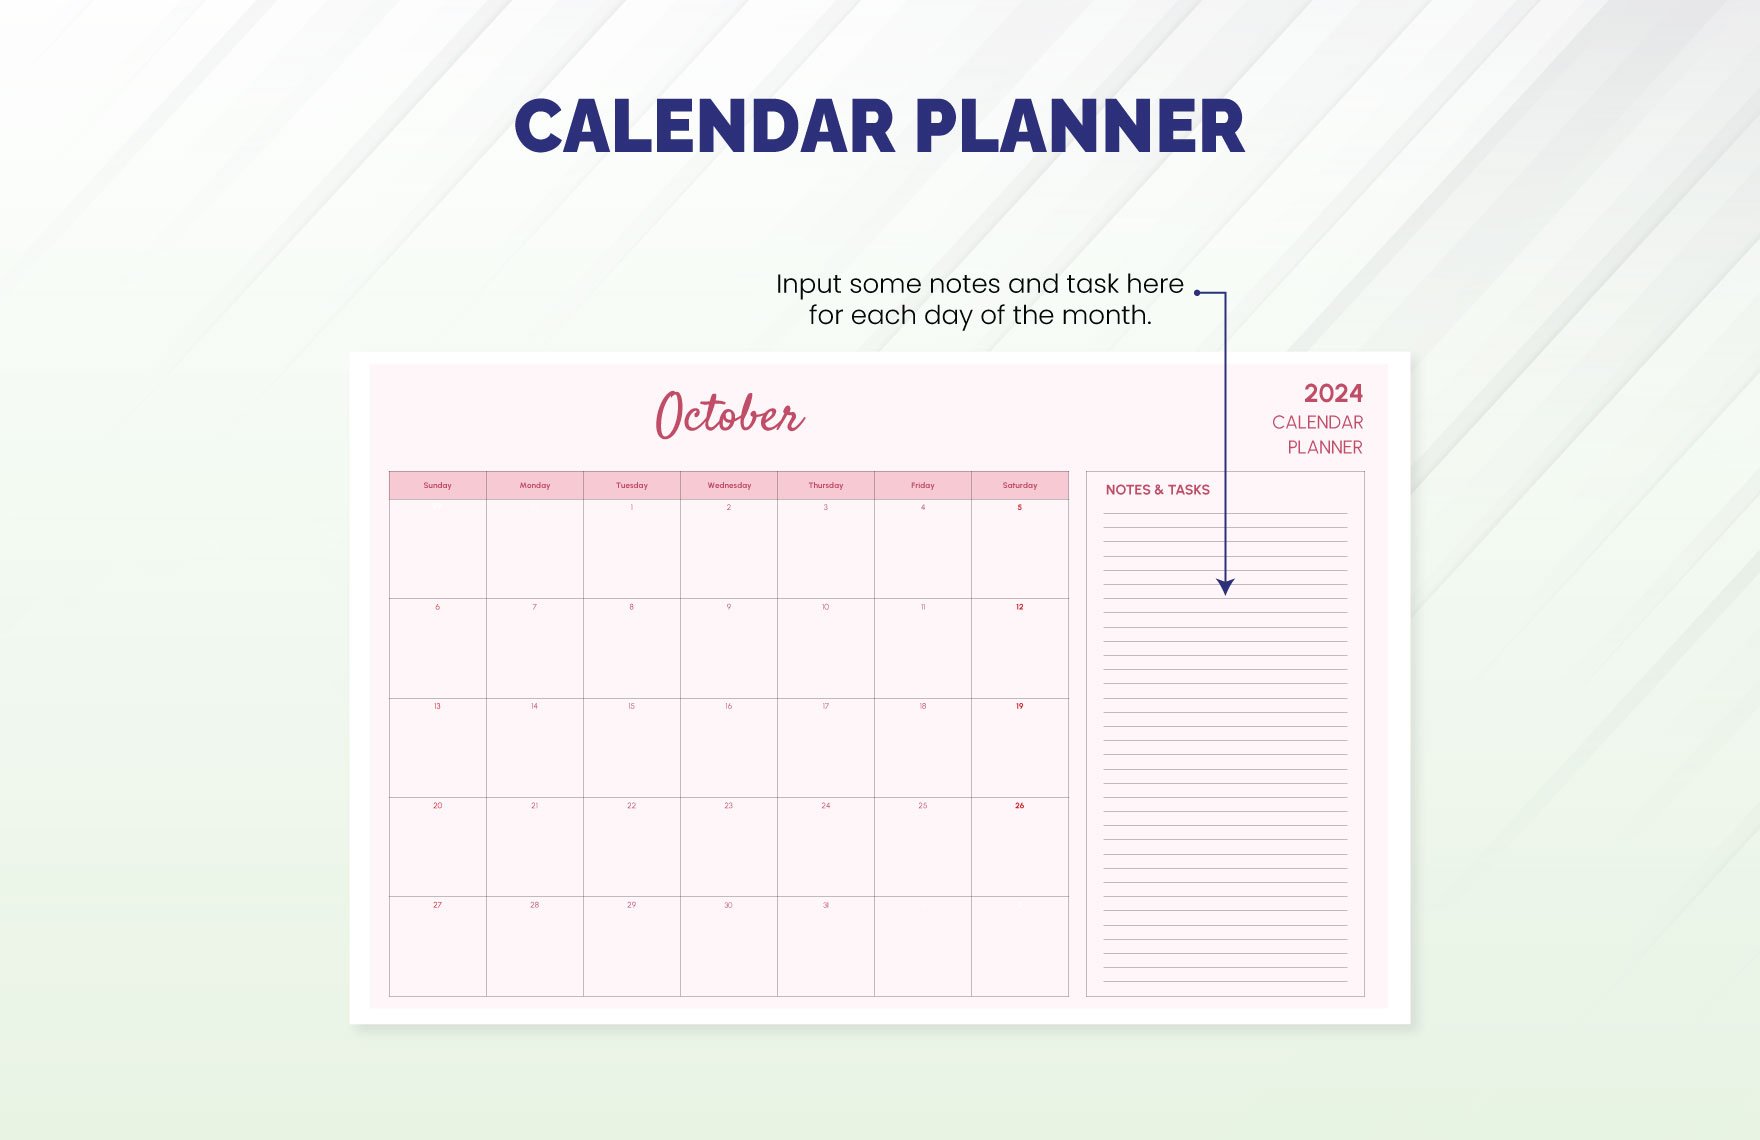 Calendar Planner Template